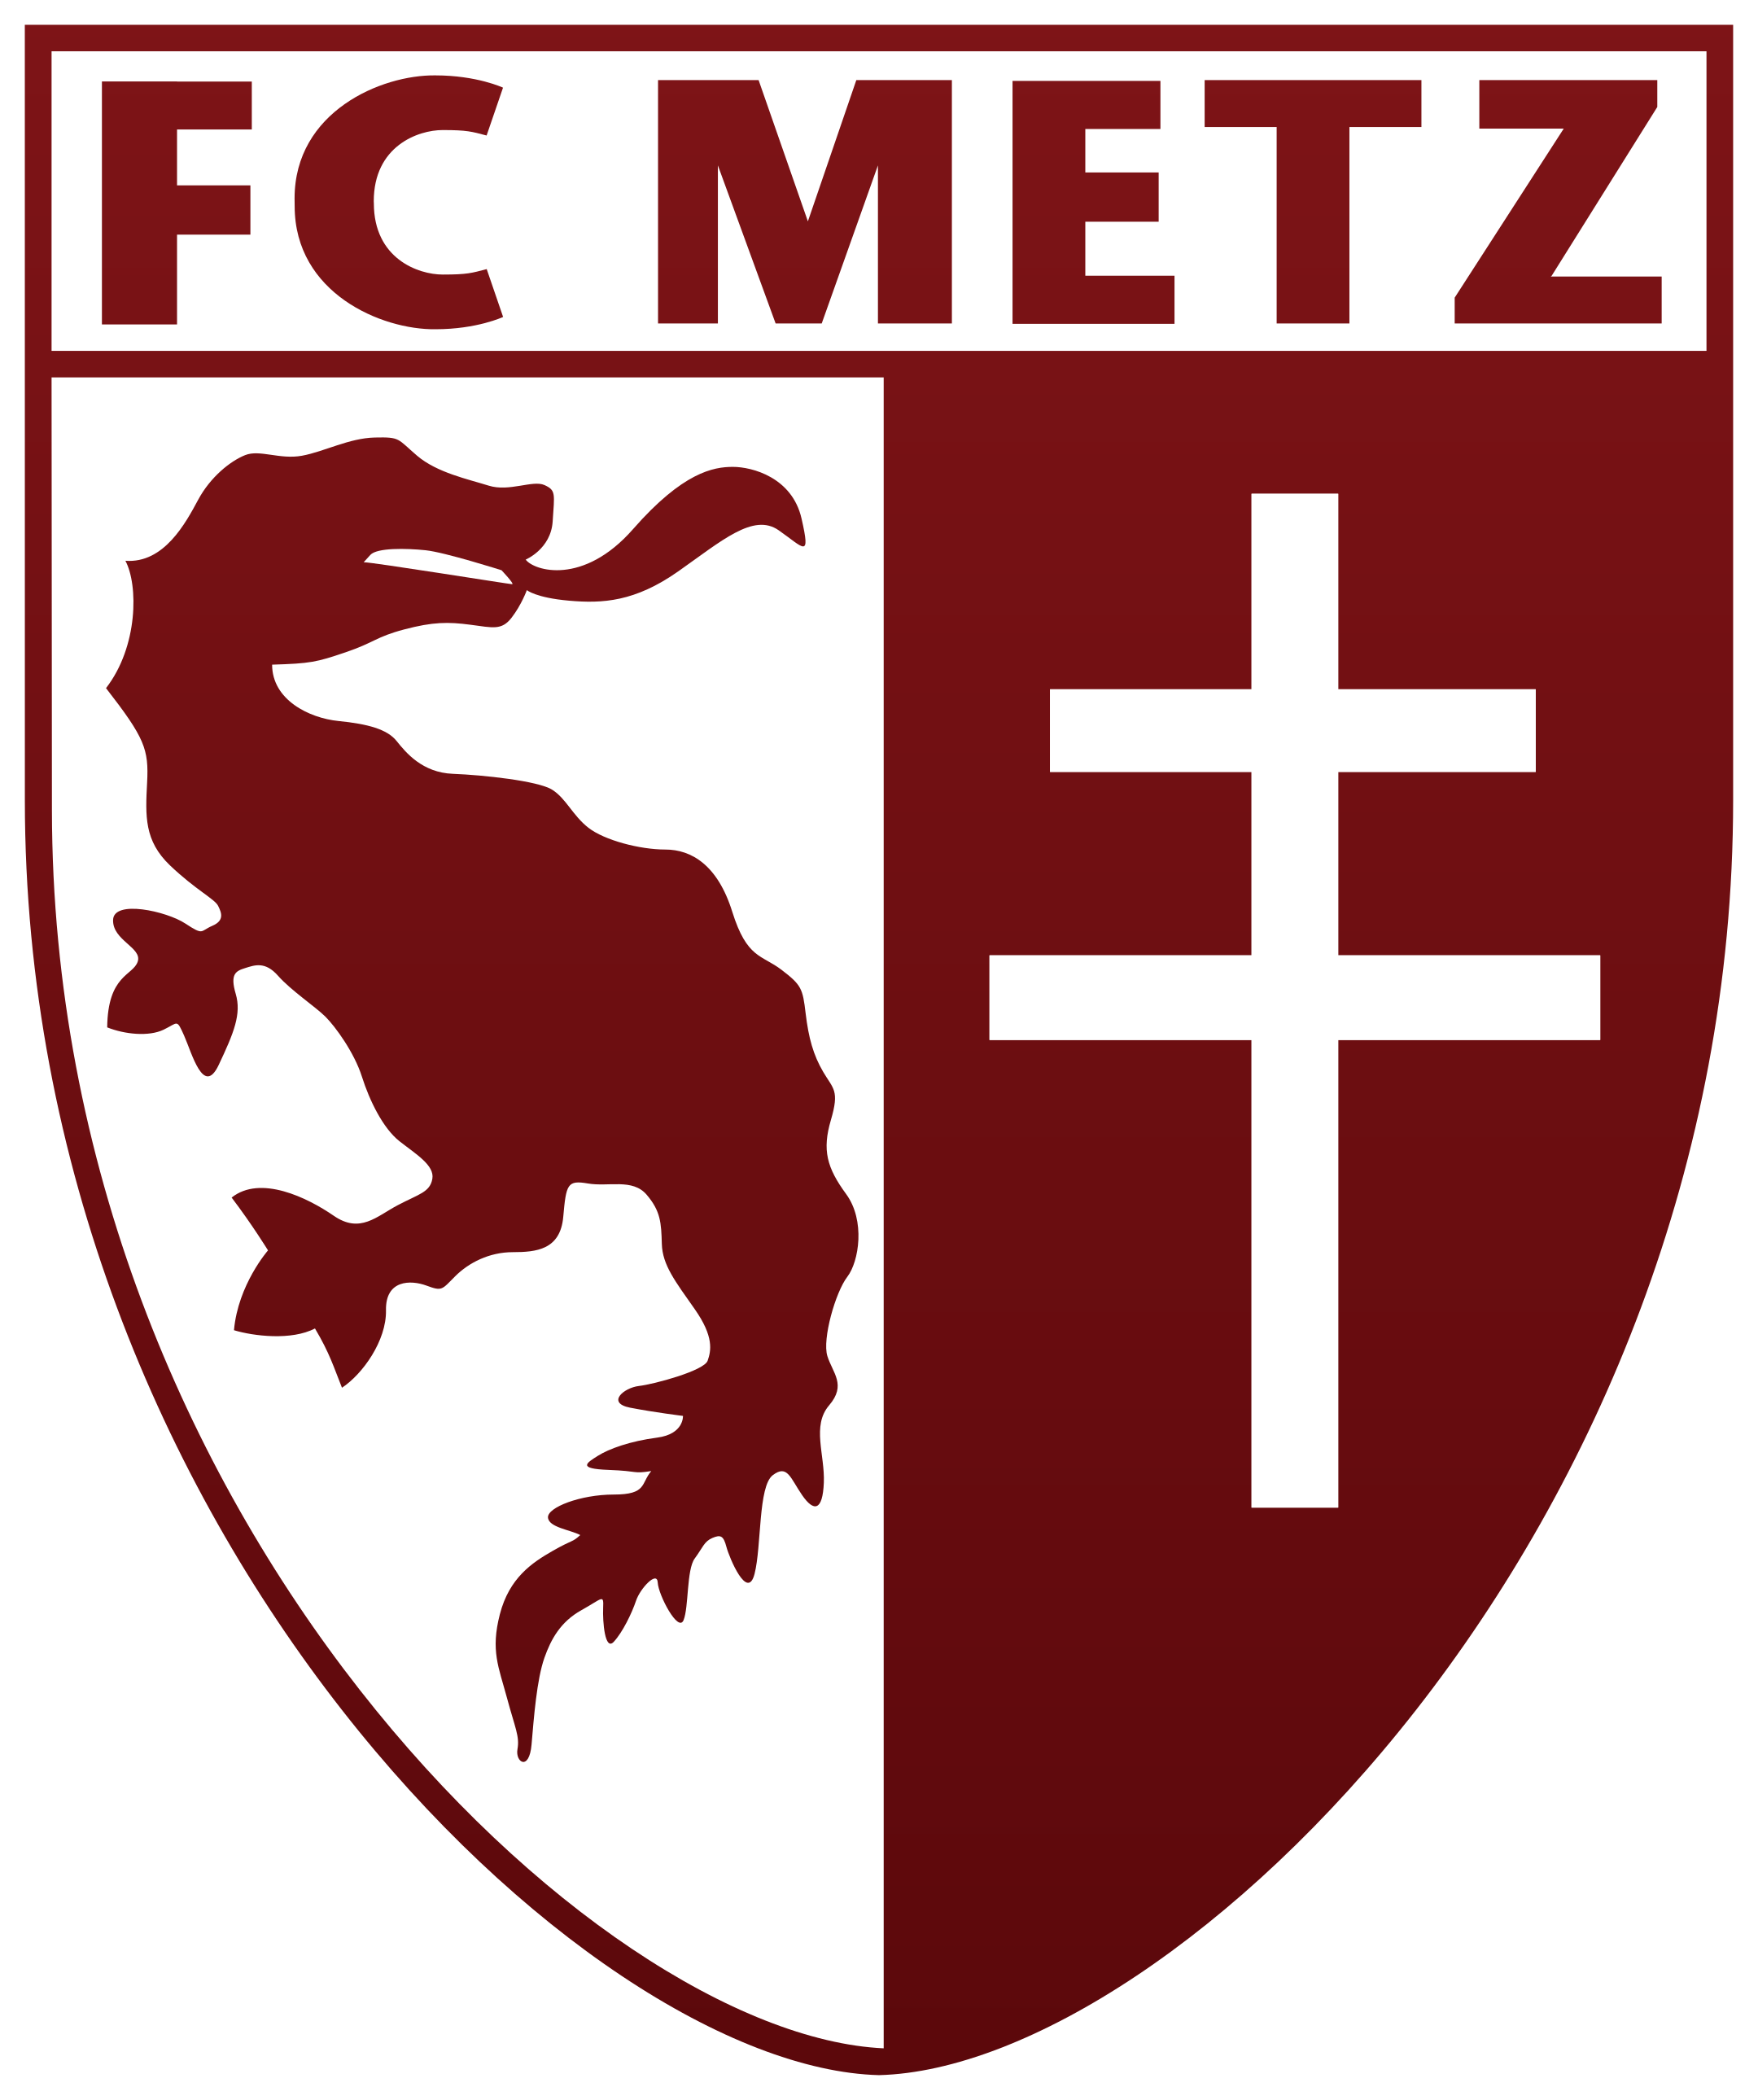 fc metz logo 1 - FC Metz Logo